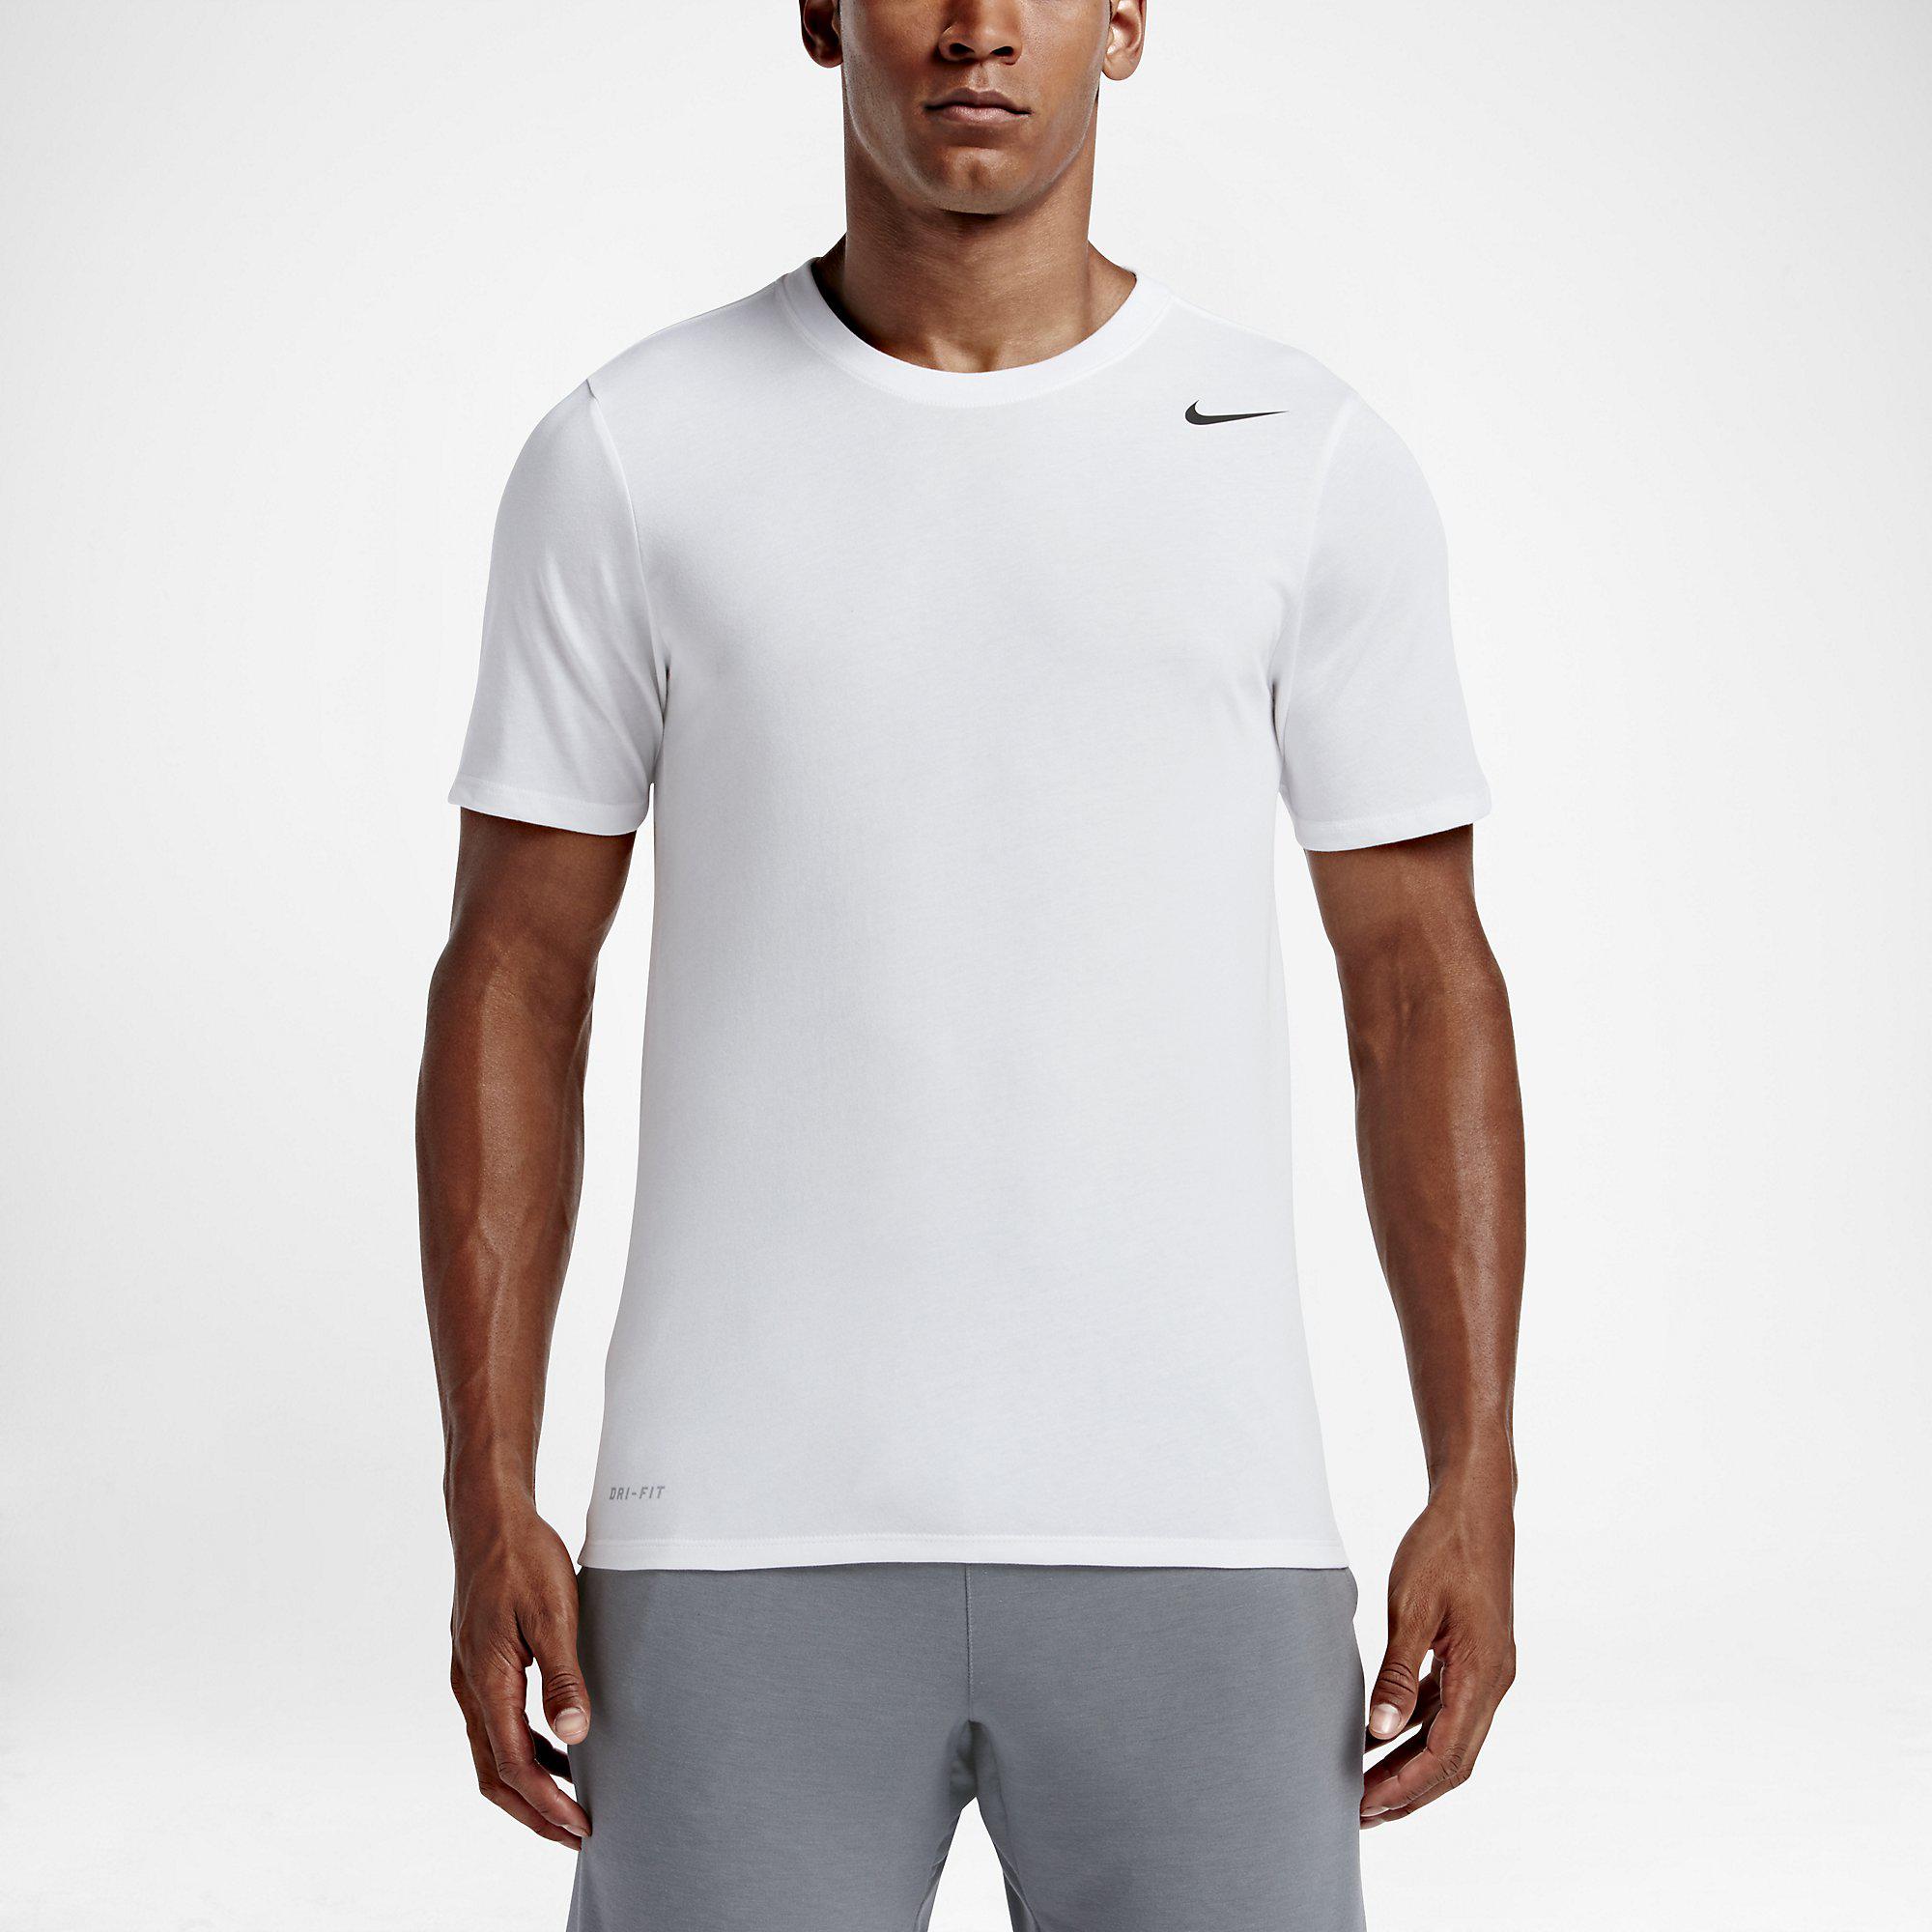 Nike Mens Dry Training T-Shirt - White - Tennisnuts.com